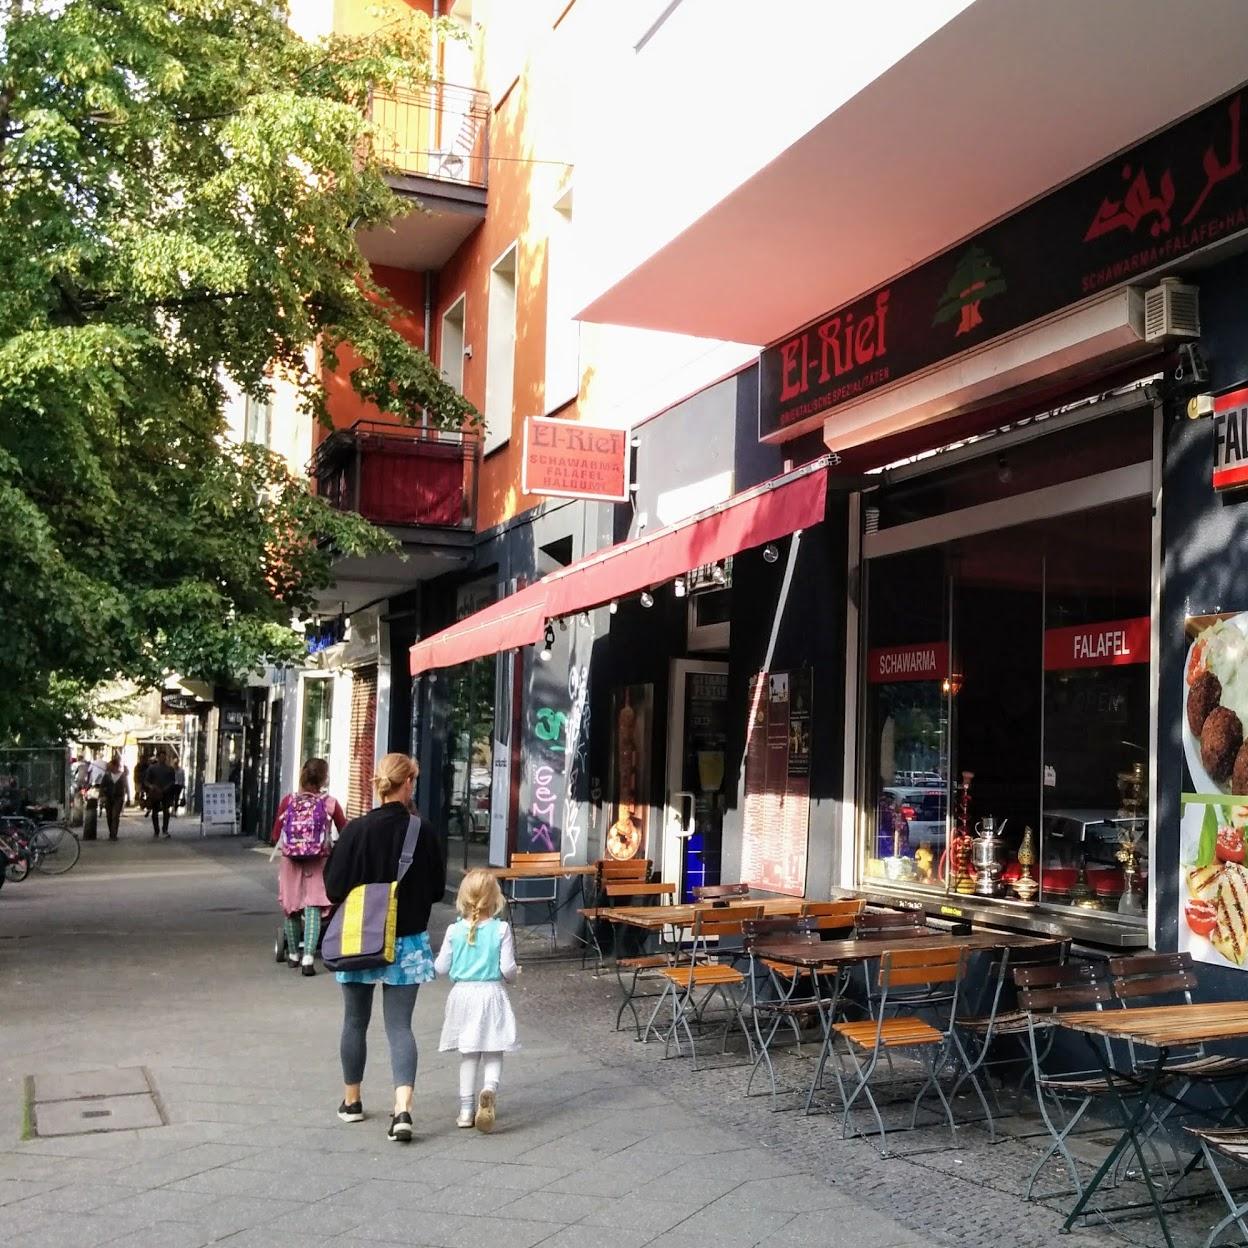 Restaurant "El-Rief" in Berlin